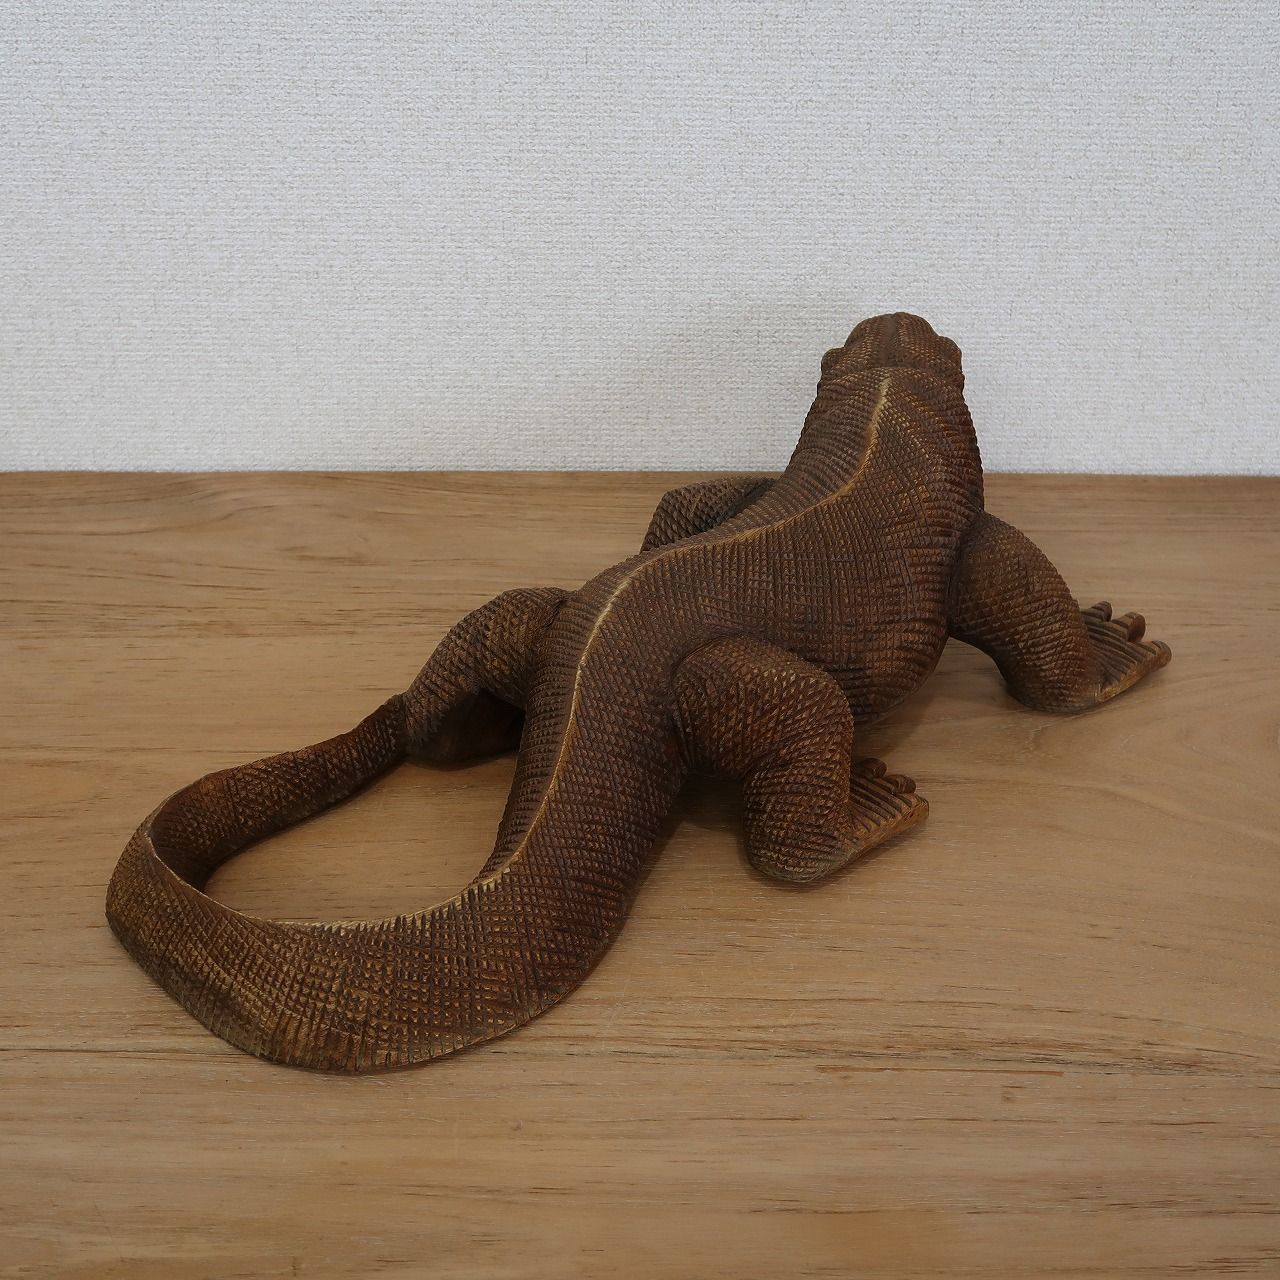 コモドドラゴンの木彫り 50cm コモドオオトカゲの置物 爬虫類の置物